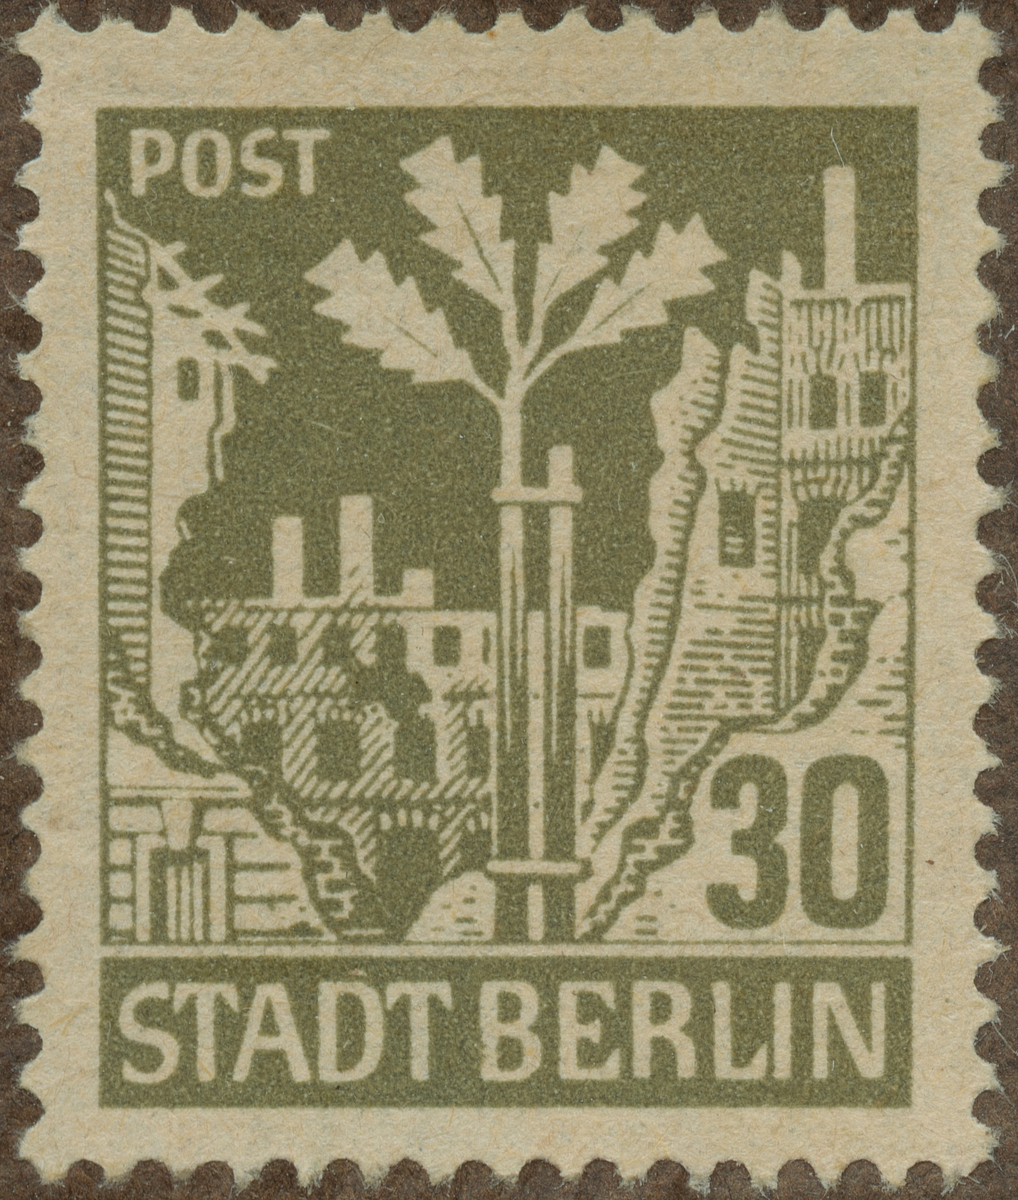 Frimärke ur Gösta Bodmans filatelistiska motivsamling, påbörjad 1950.
Frimärke från Tyskland, 1945. Motiv av Ekplanta Symbol för det nya Berlin